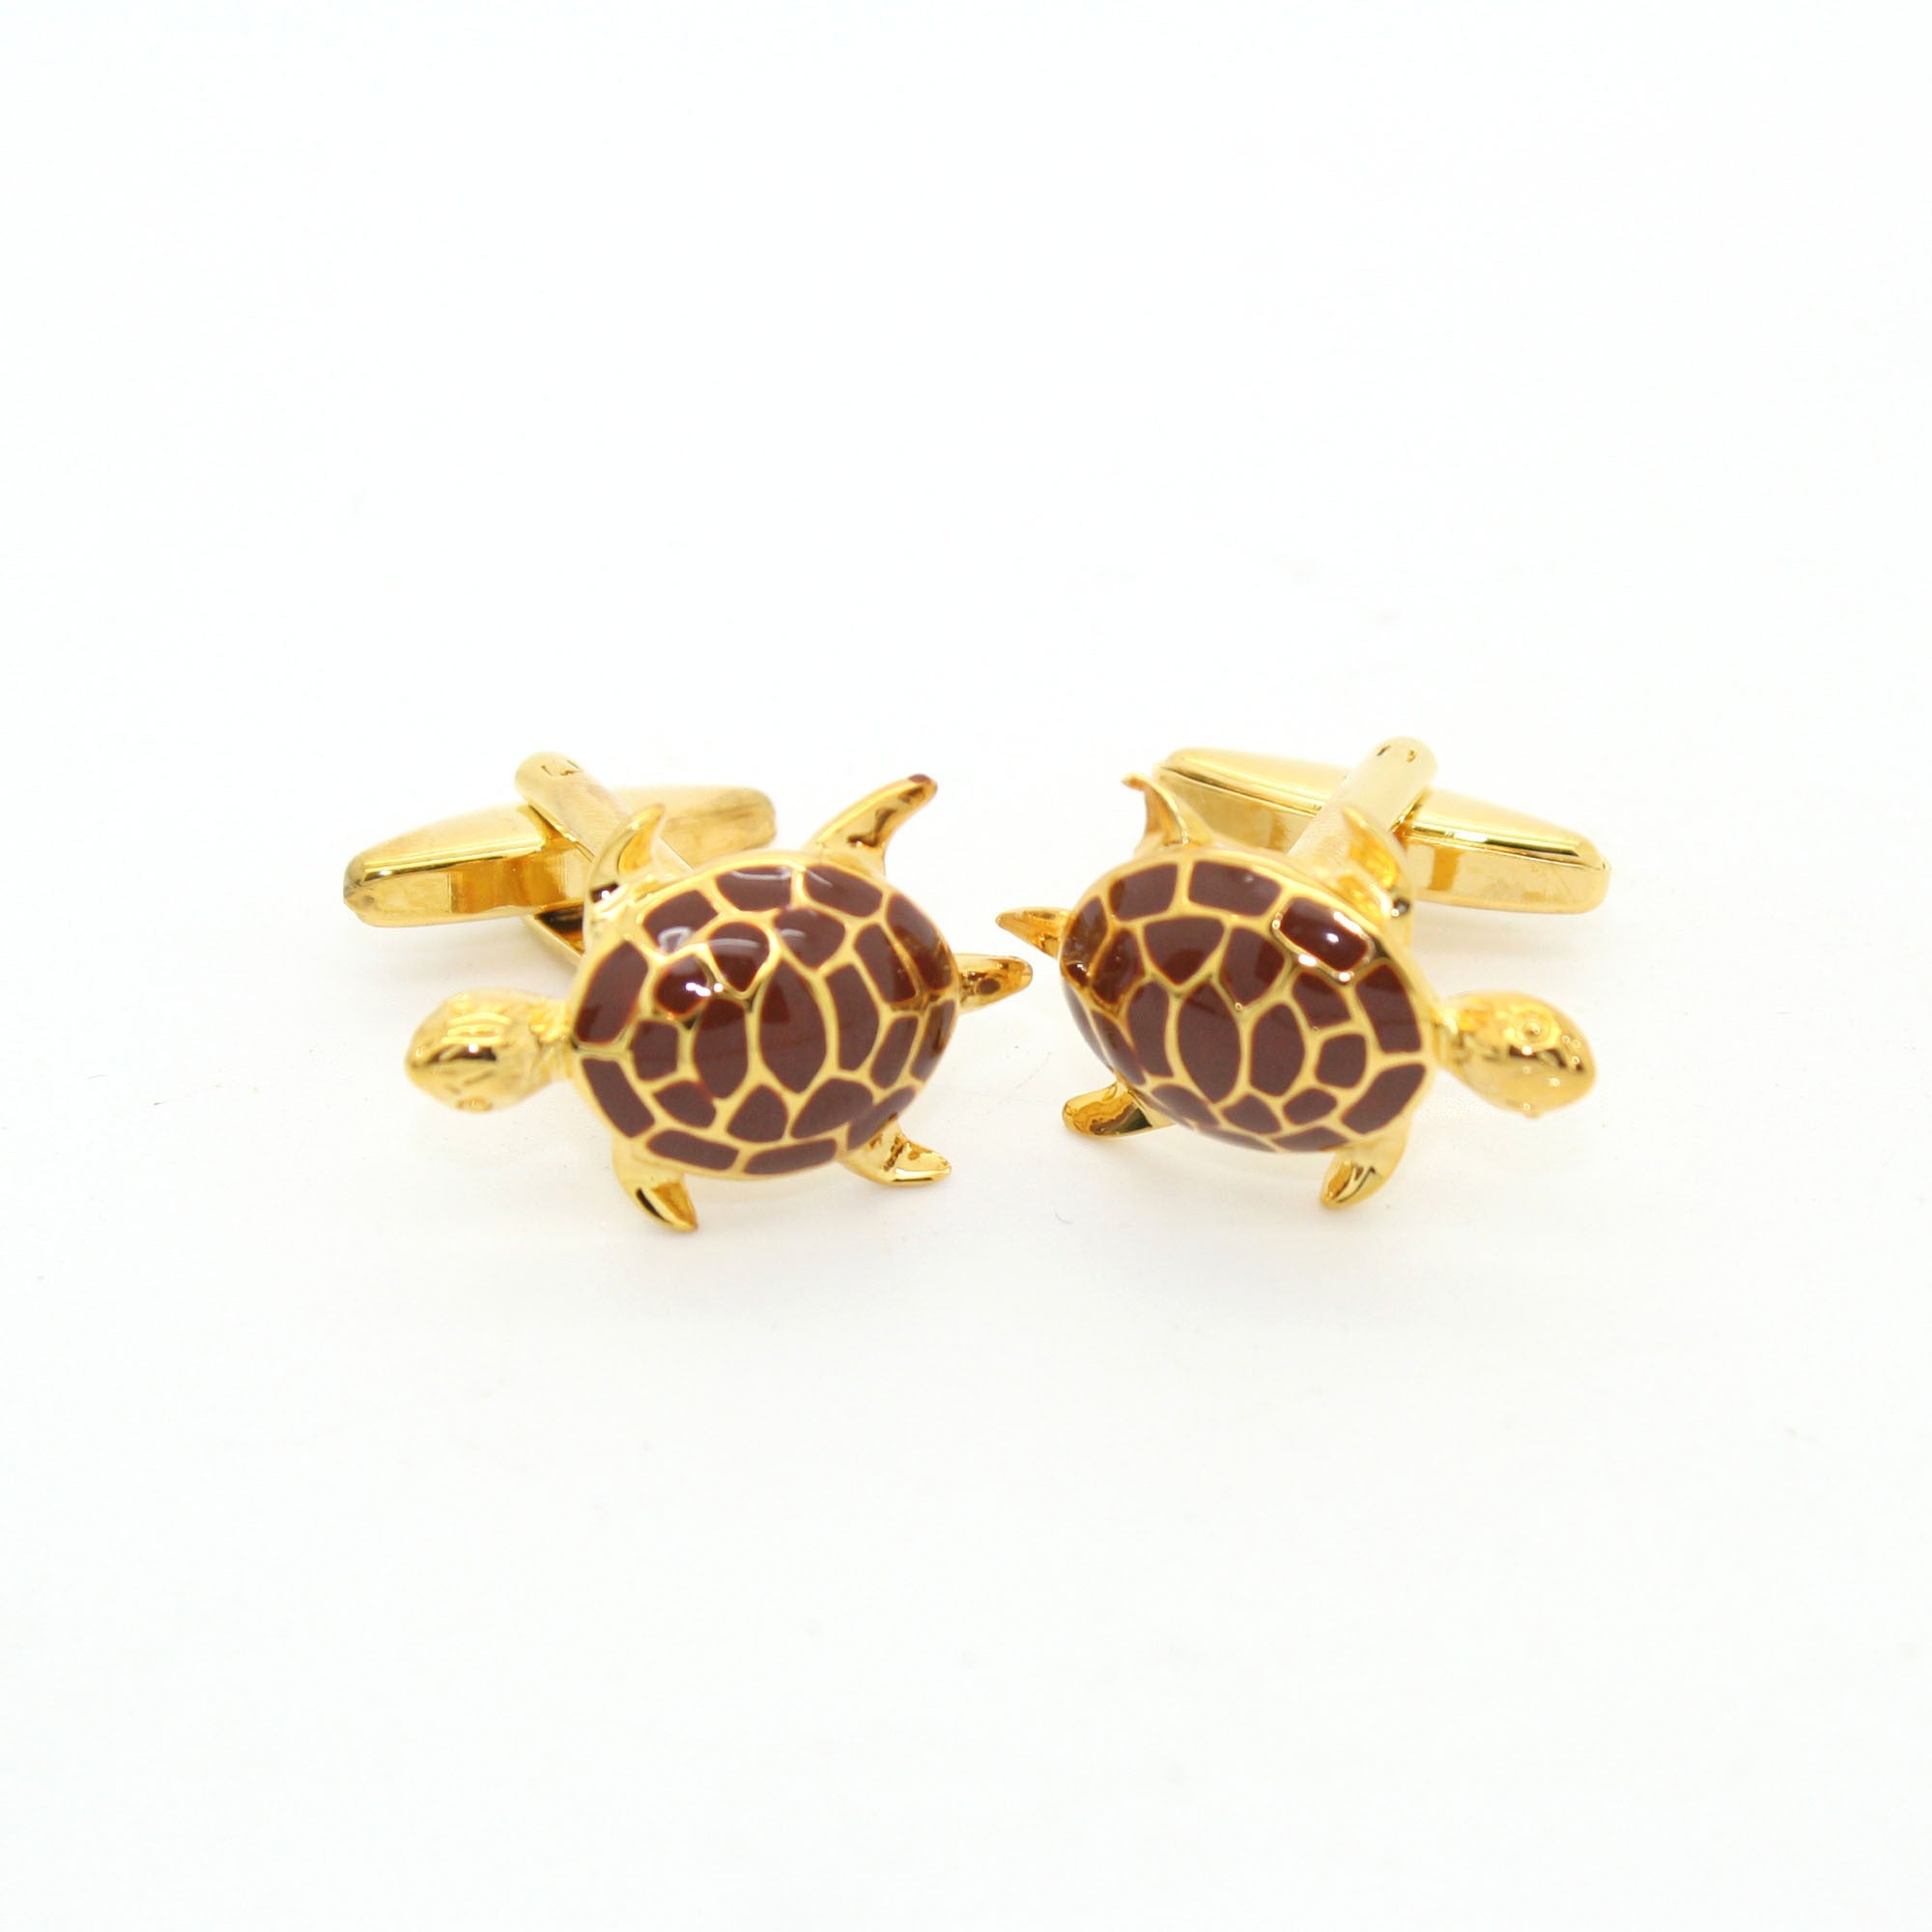 Goldtone Turtle Cuff Links With Jewelry Box